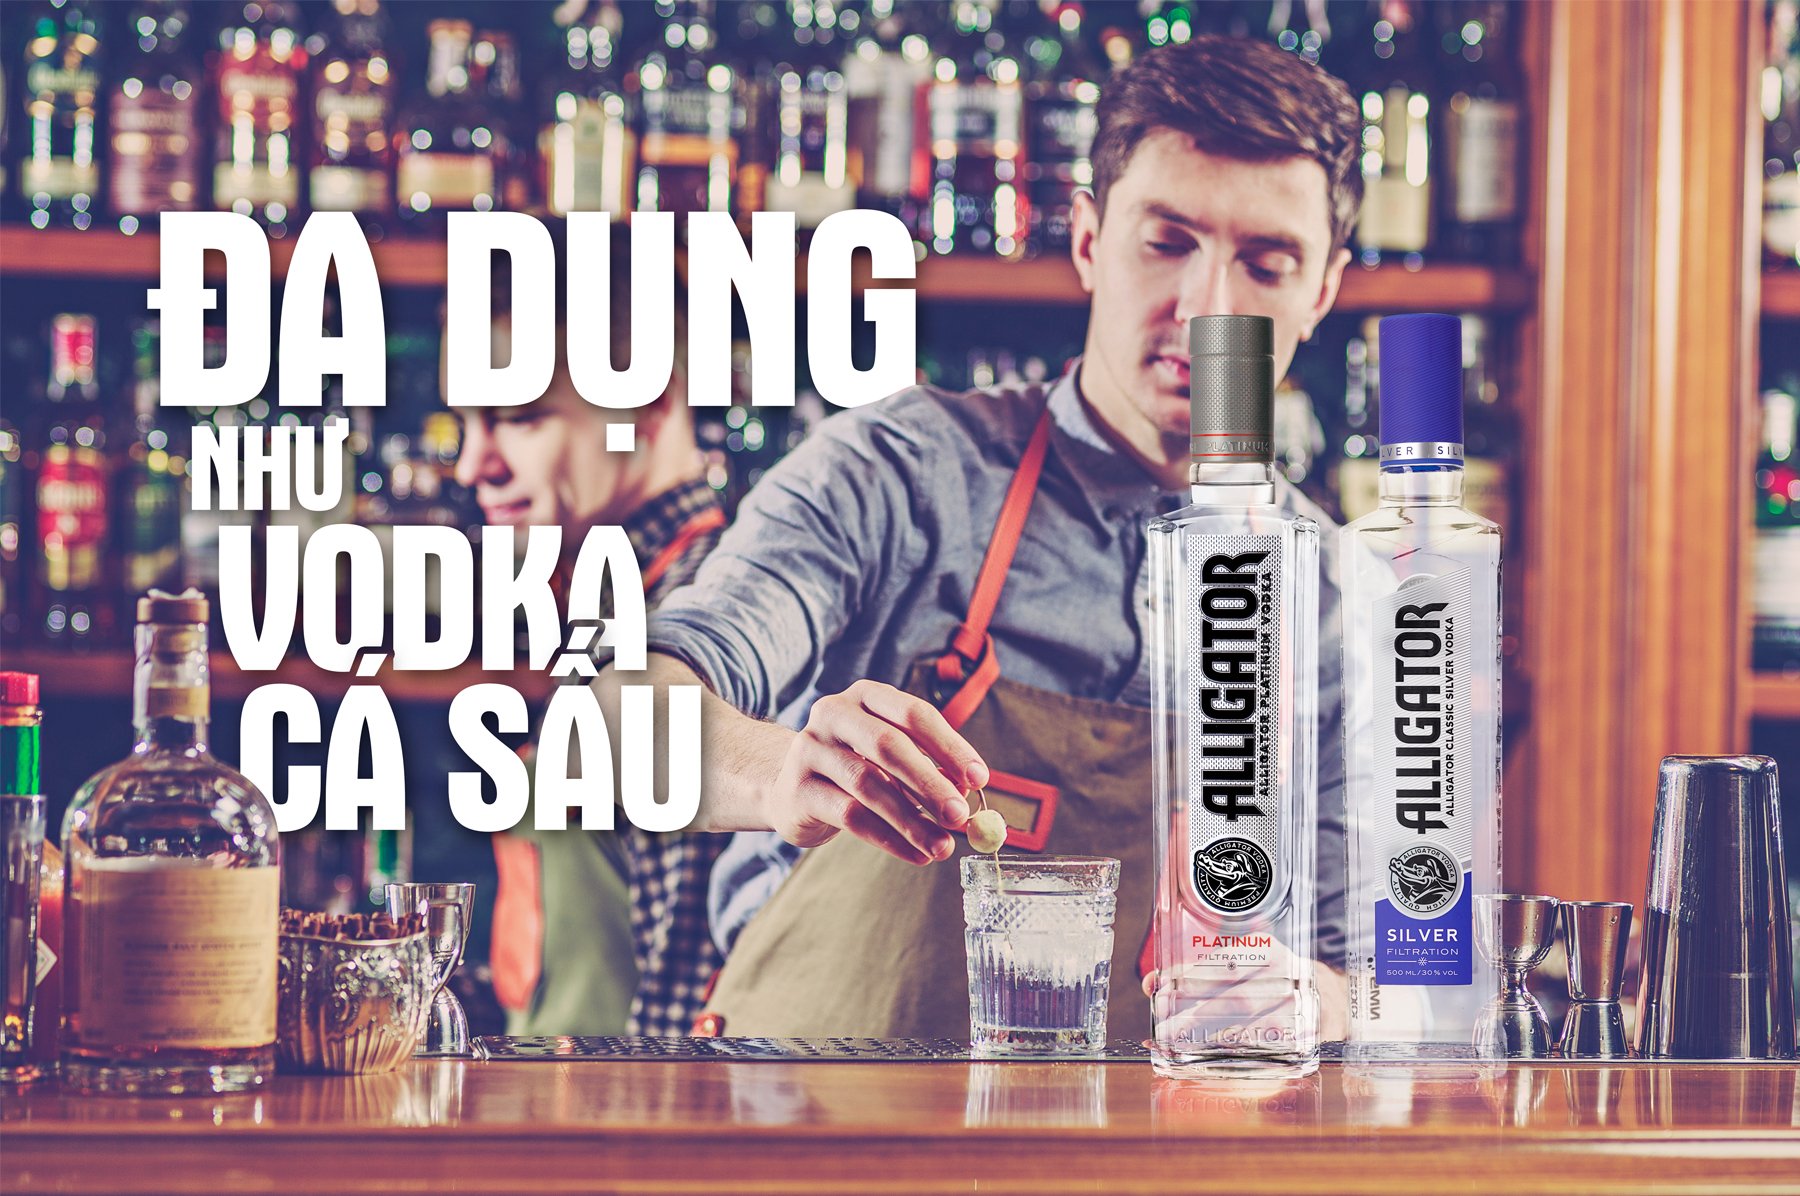 thuong-thuc-vodka-ca-sau-4